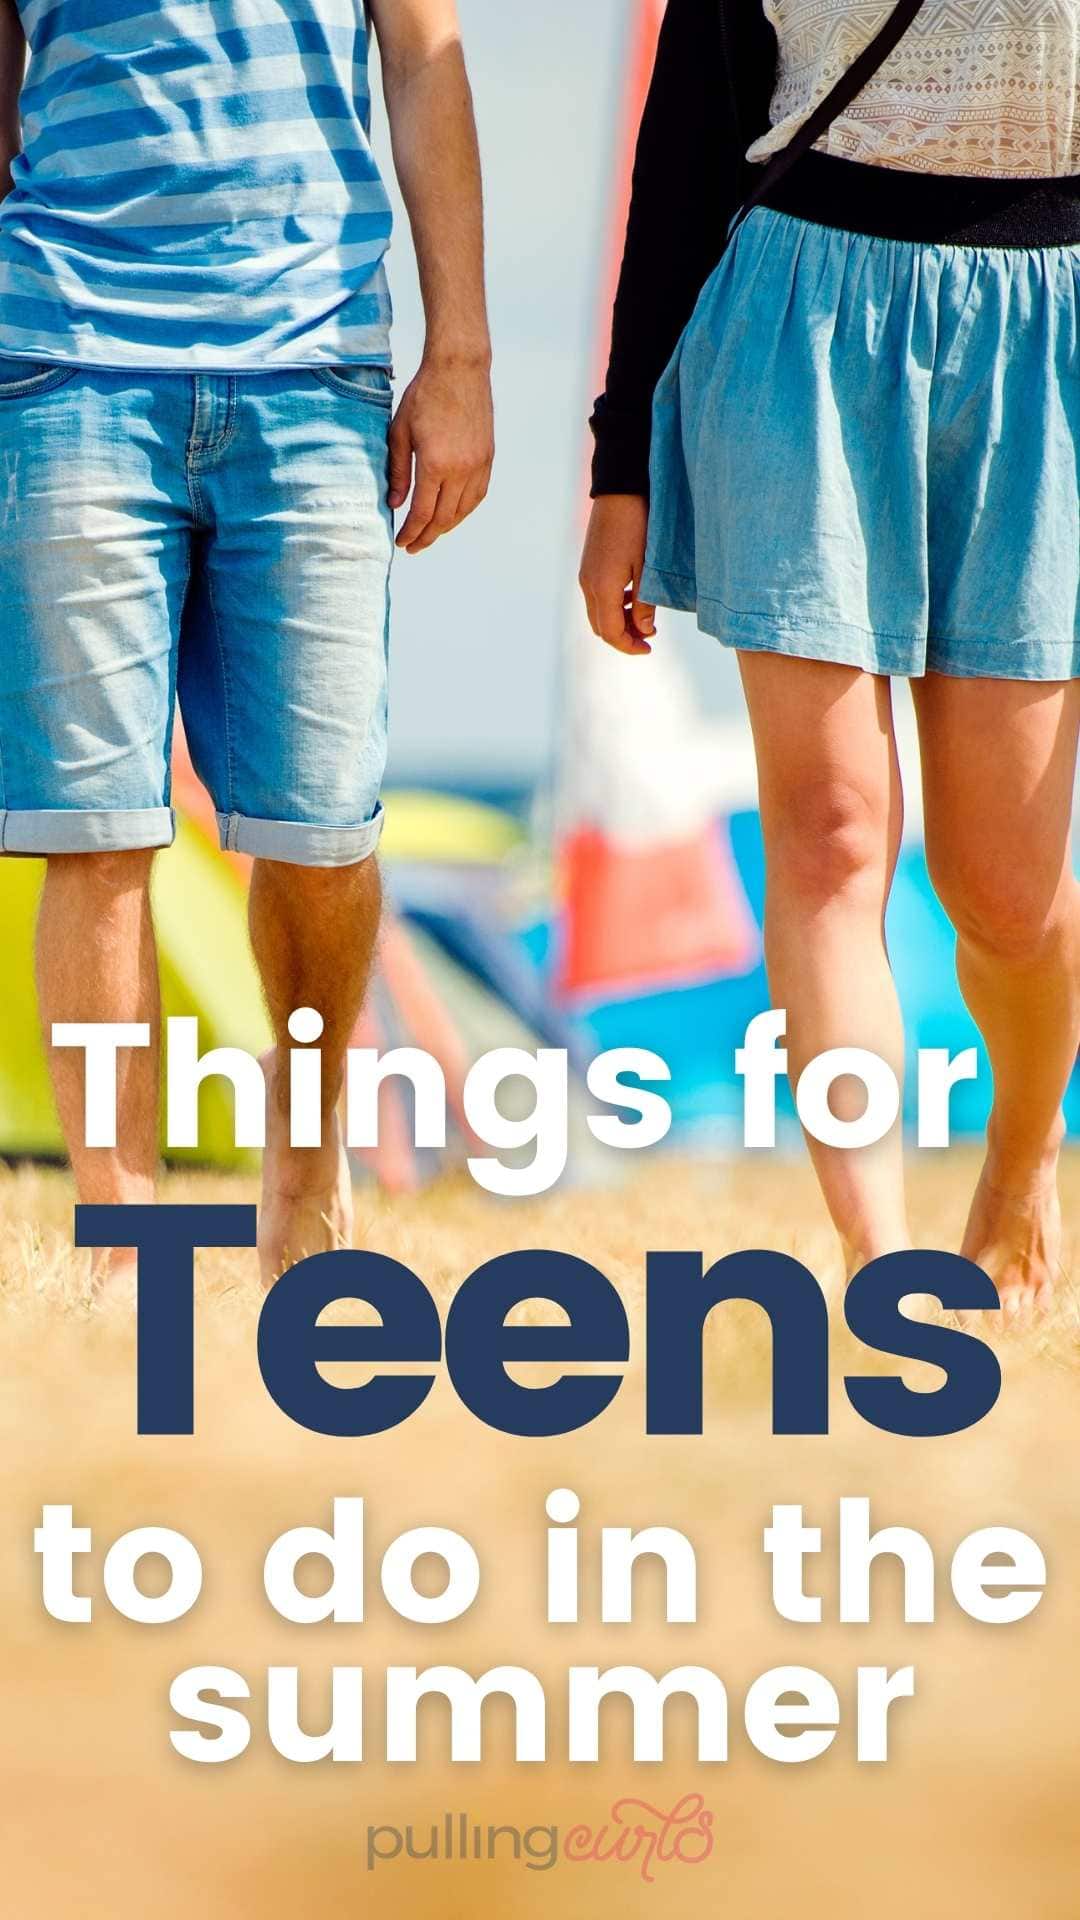 Fun Activities for Teens & Tweens in Summer via @pullingcurls